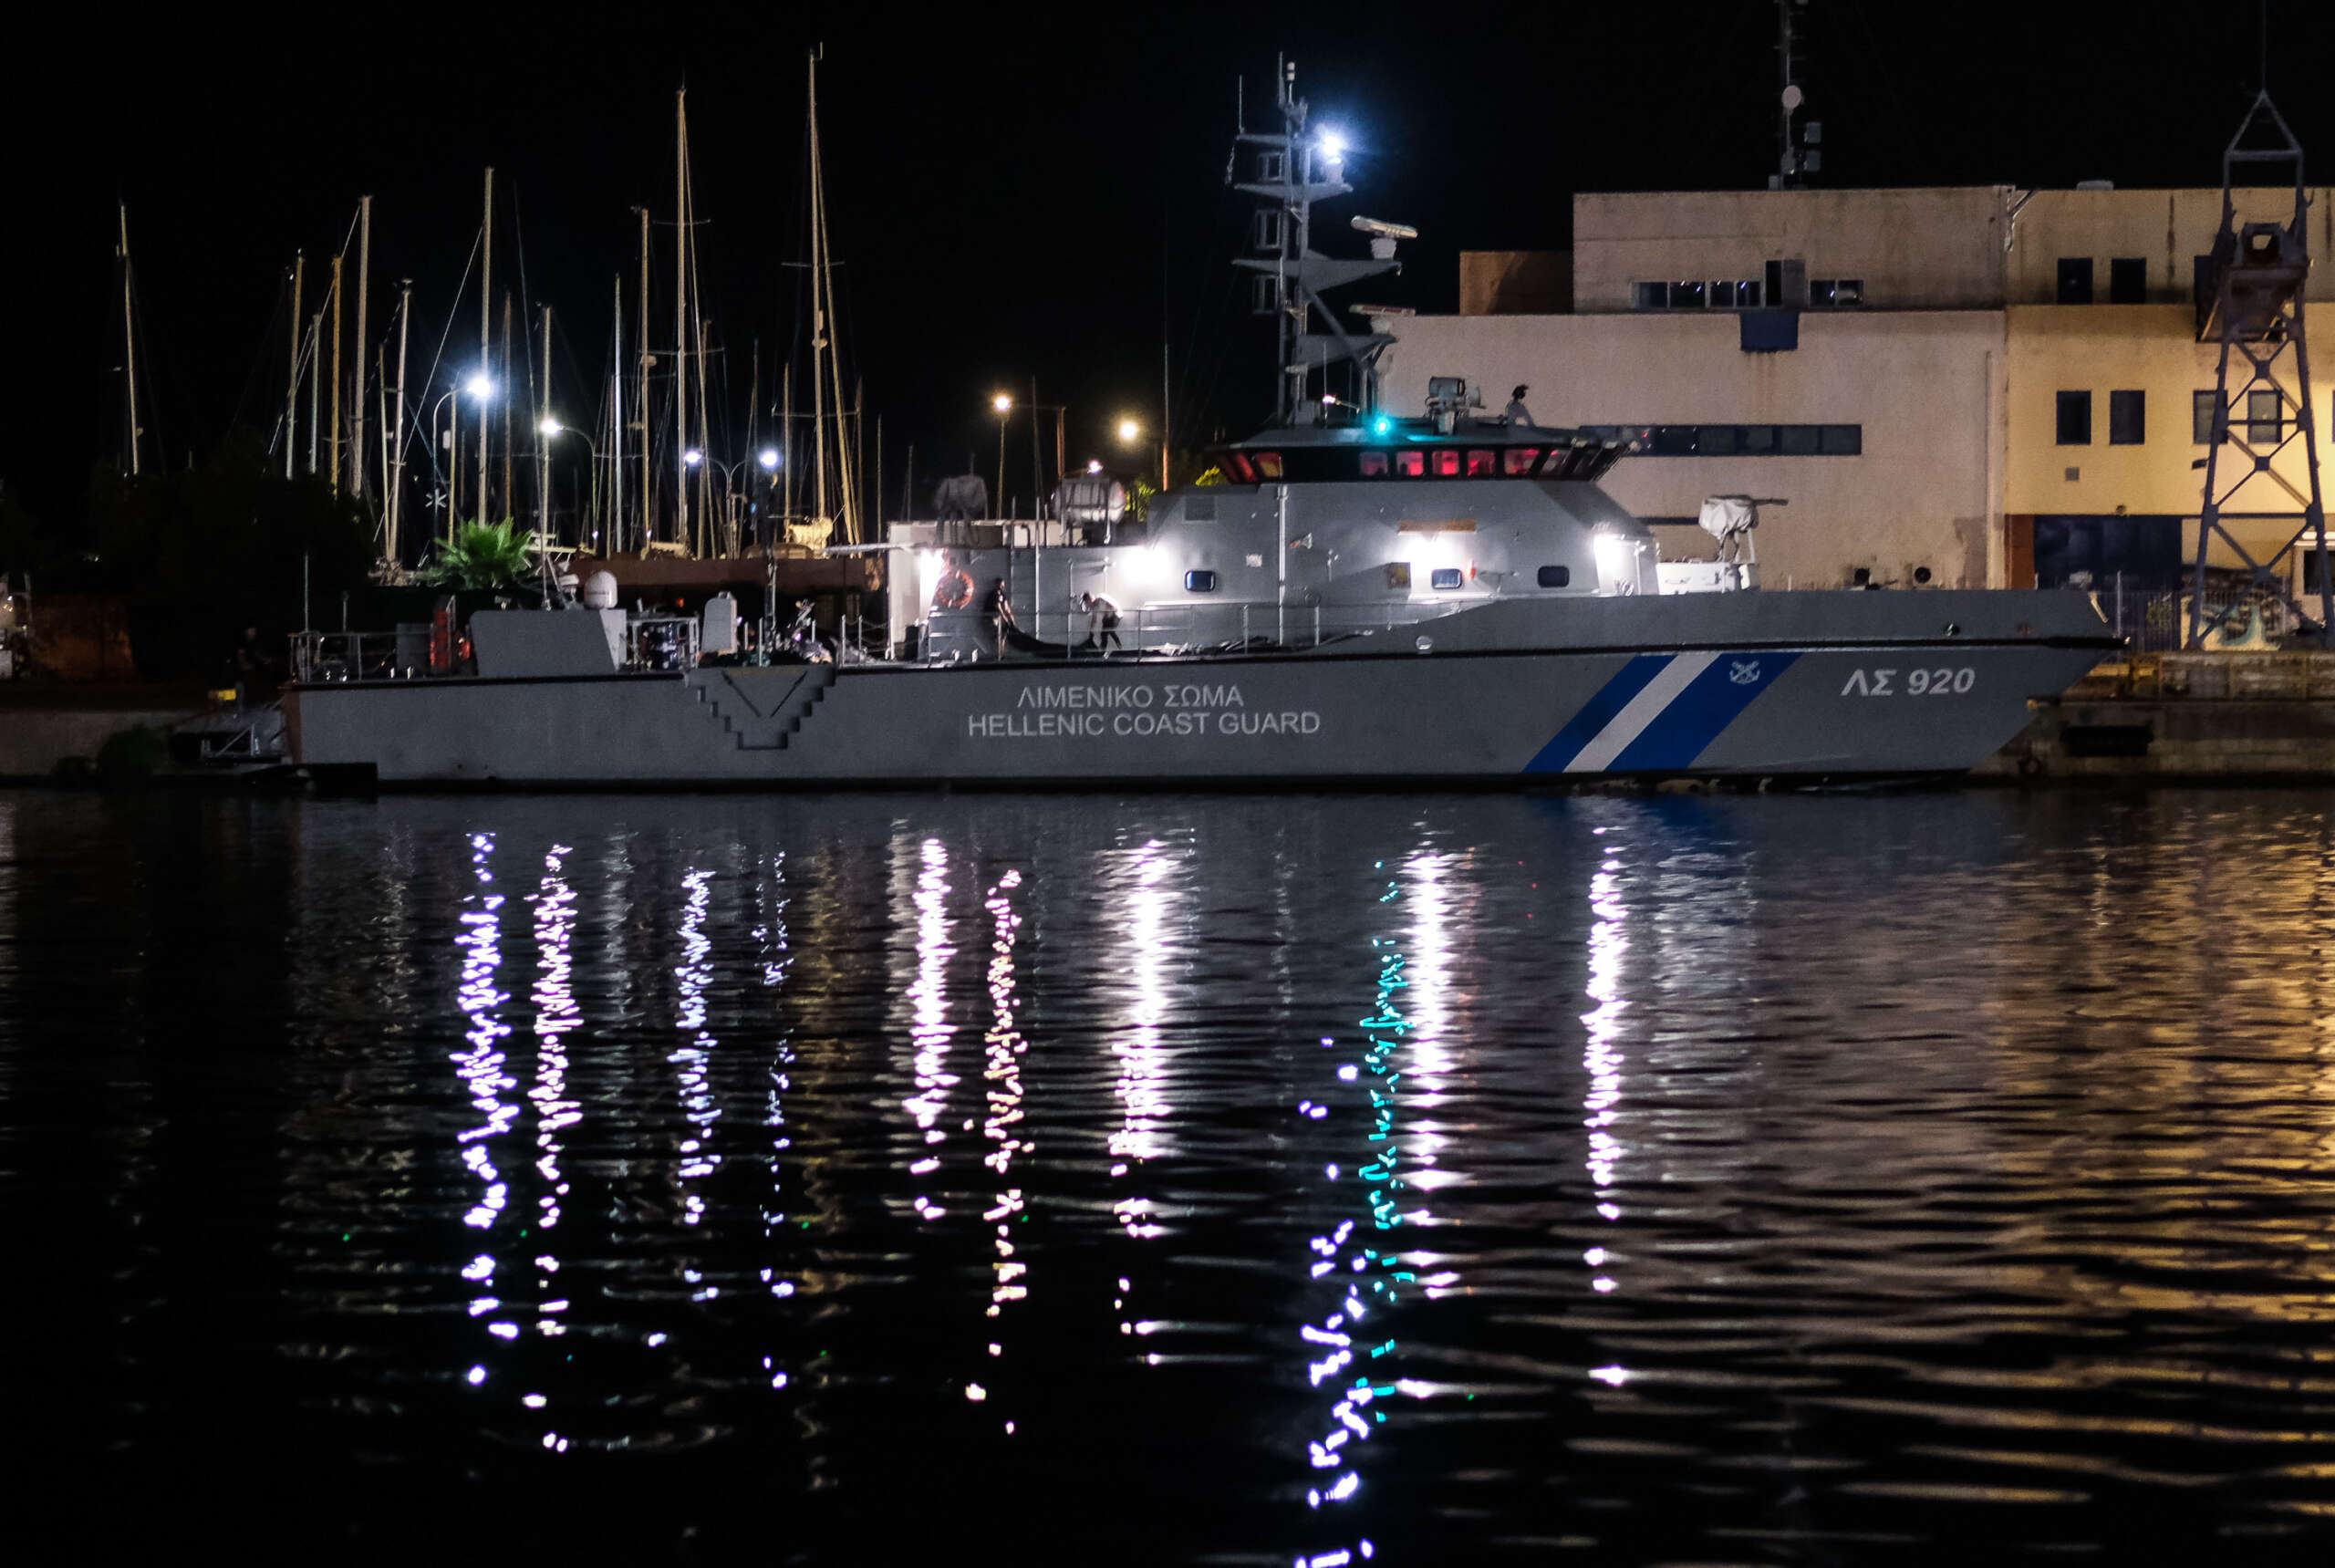 Les garde-côtes grecs ont tenté de dissimuler leur rôle dans le naufrage de migrants, selon une analyse